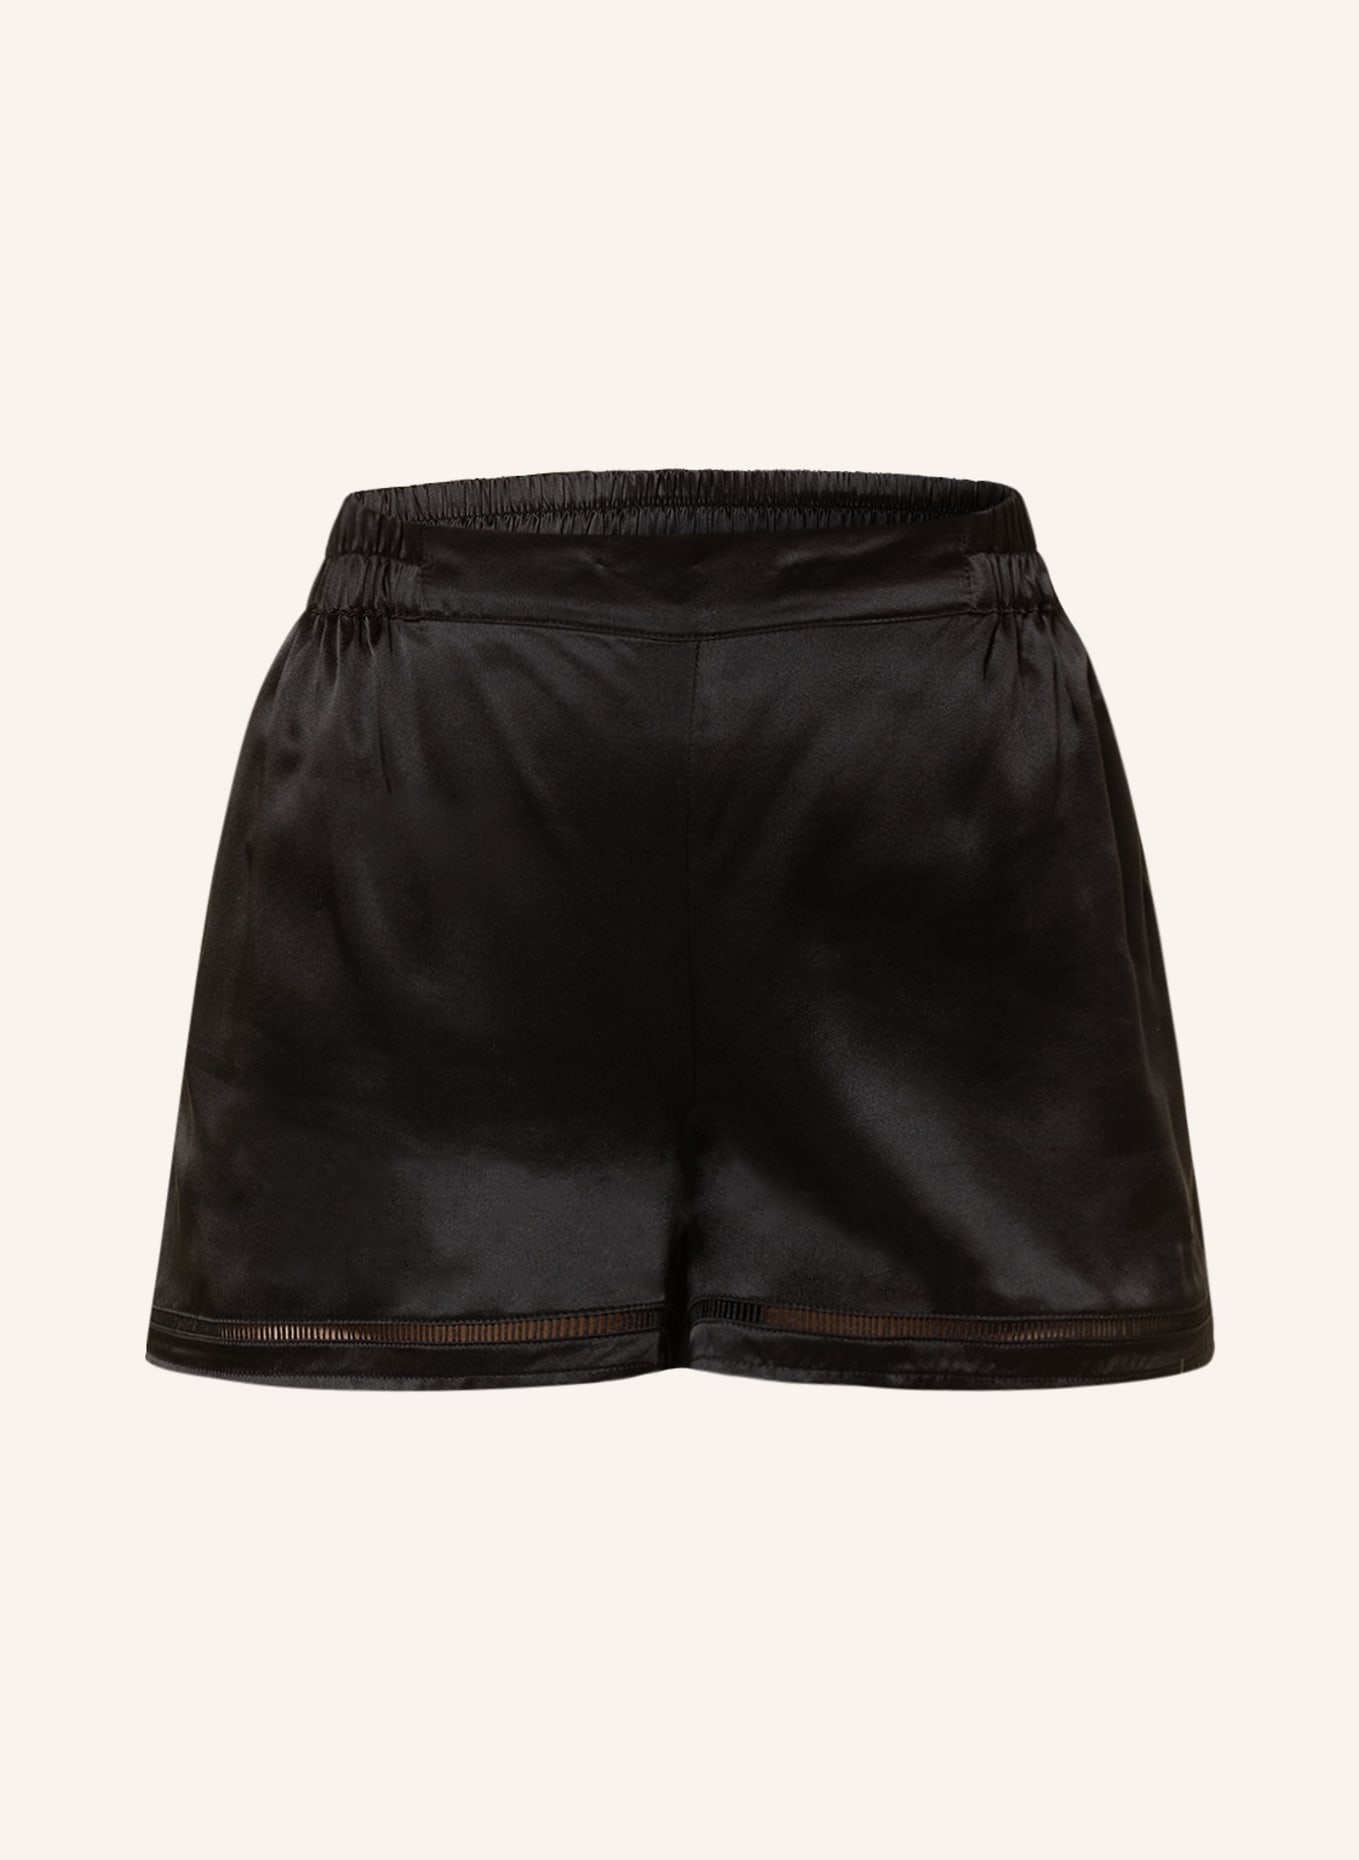 CHANTELLE Pajama shorts NIGHTSHADE in silk, Color: BLACK (Image 1)